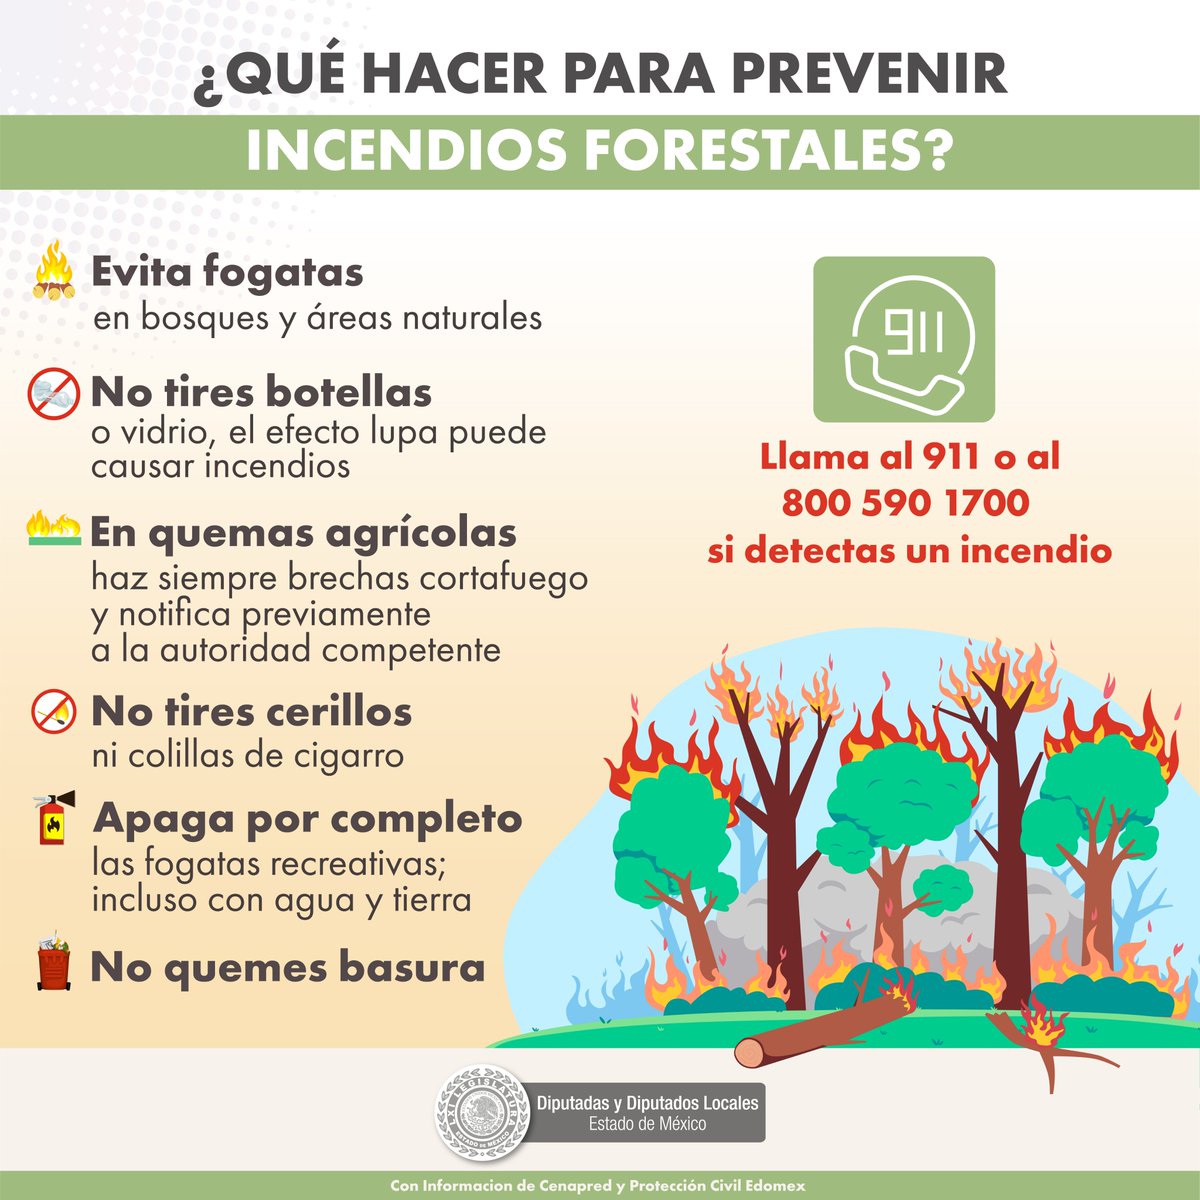 La temporada de #IncendiosForestales en el #EstadoDeMéxico está afectando gravemente nuestros bosques. 🌲🌲 Es momento de tomar acción y seguir las recomendaciones de prevención. #CuidemosNuestrosBosques #PrevenciónDeIncendios